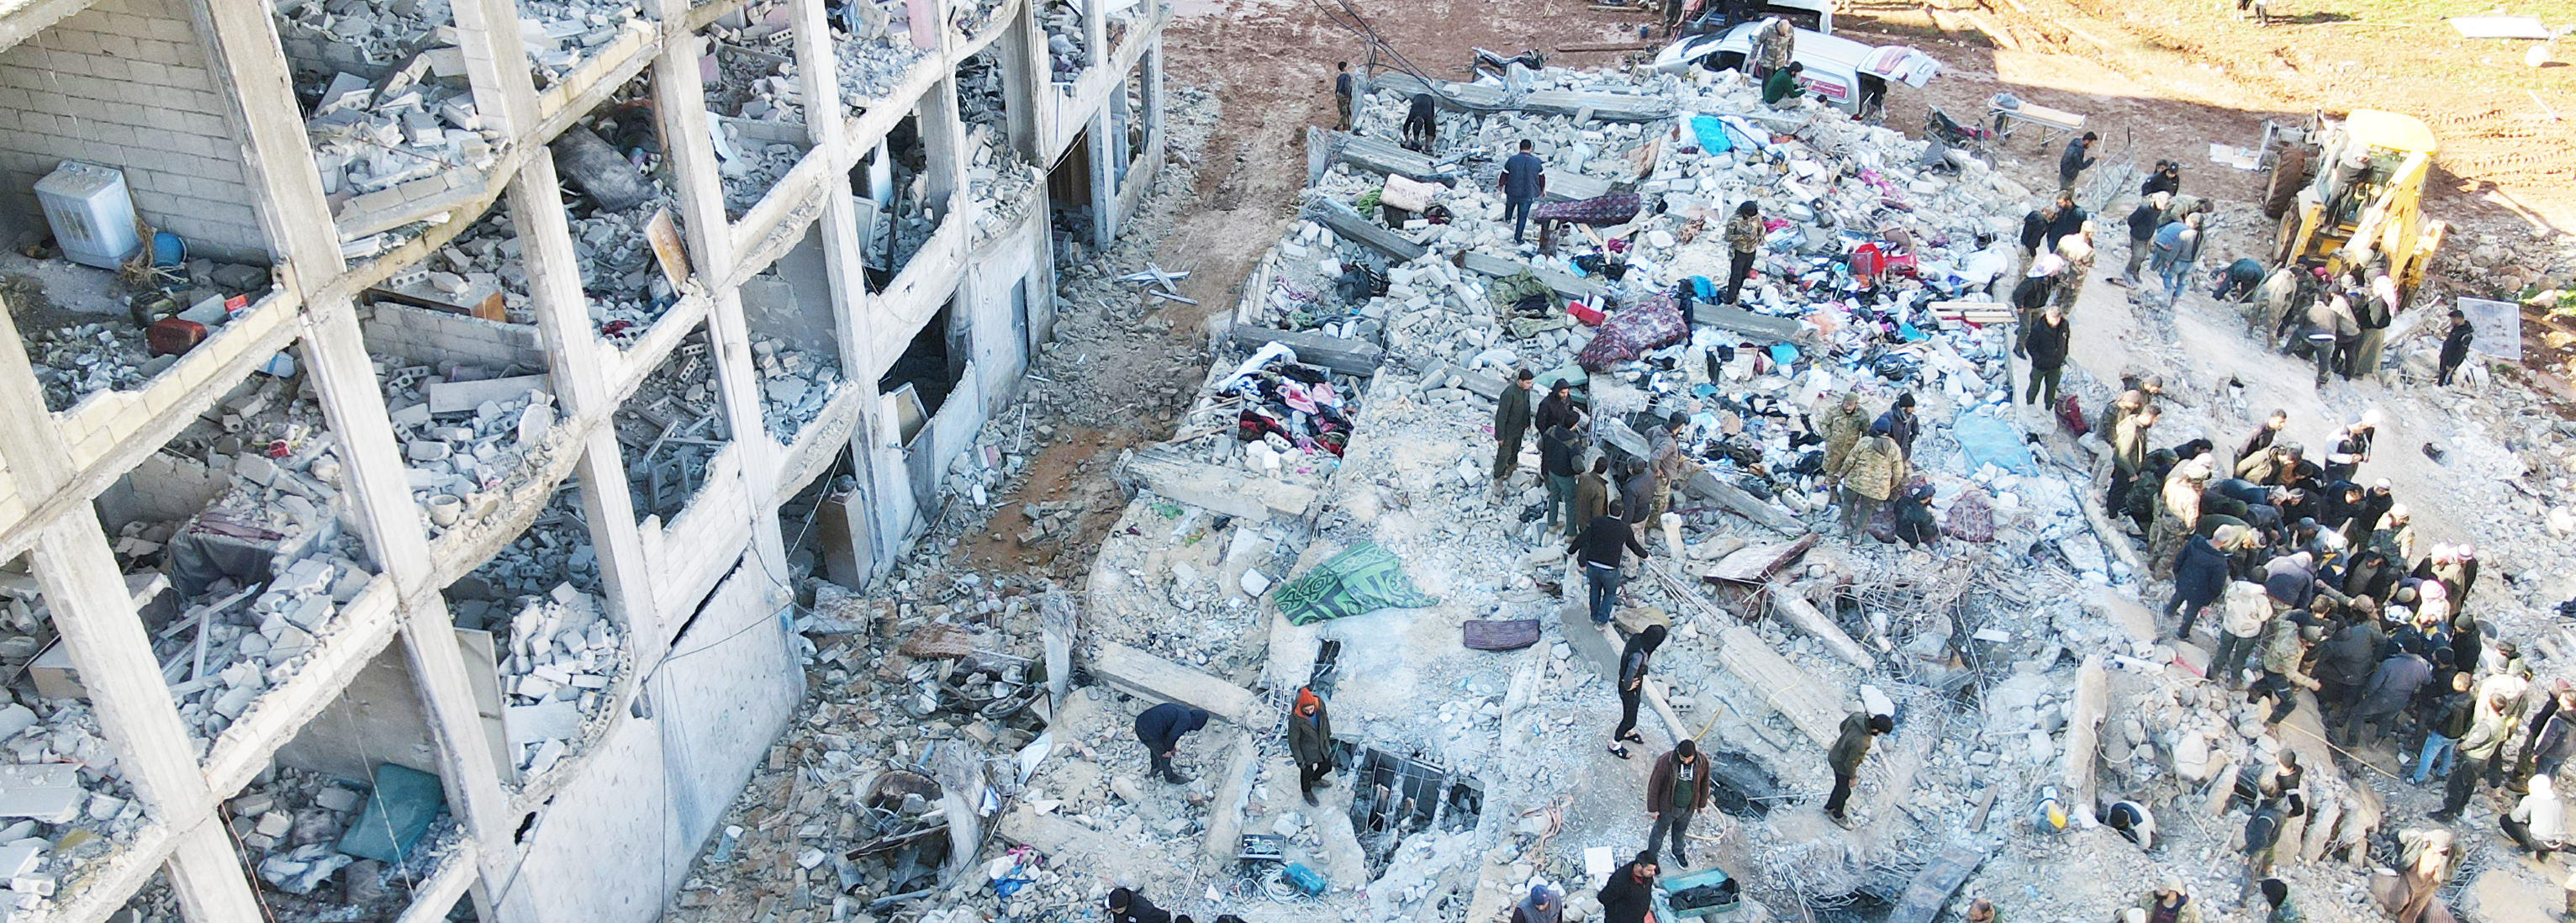 Zerstörte Wohnungen nach dem Erdbeben in der Türkei